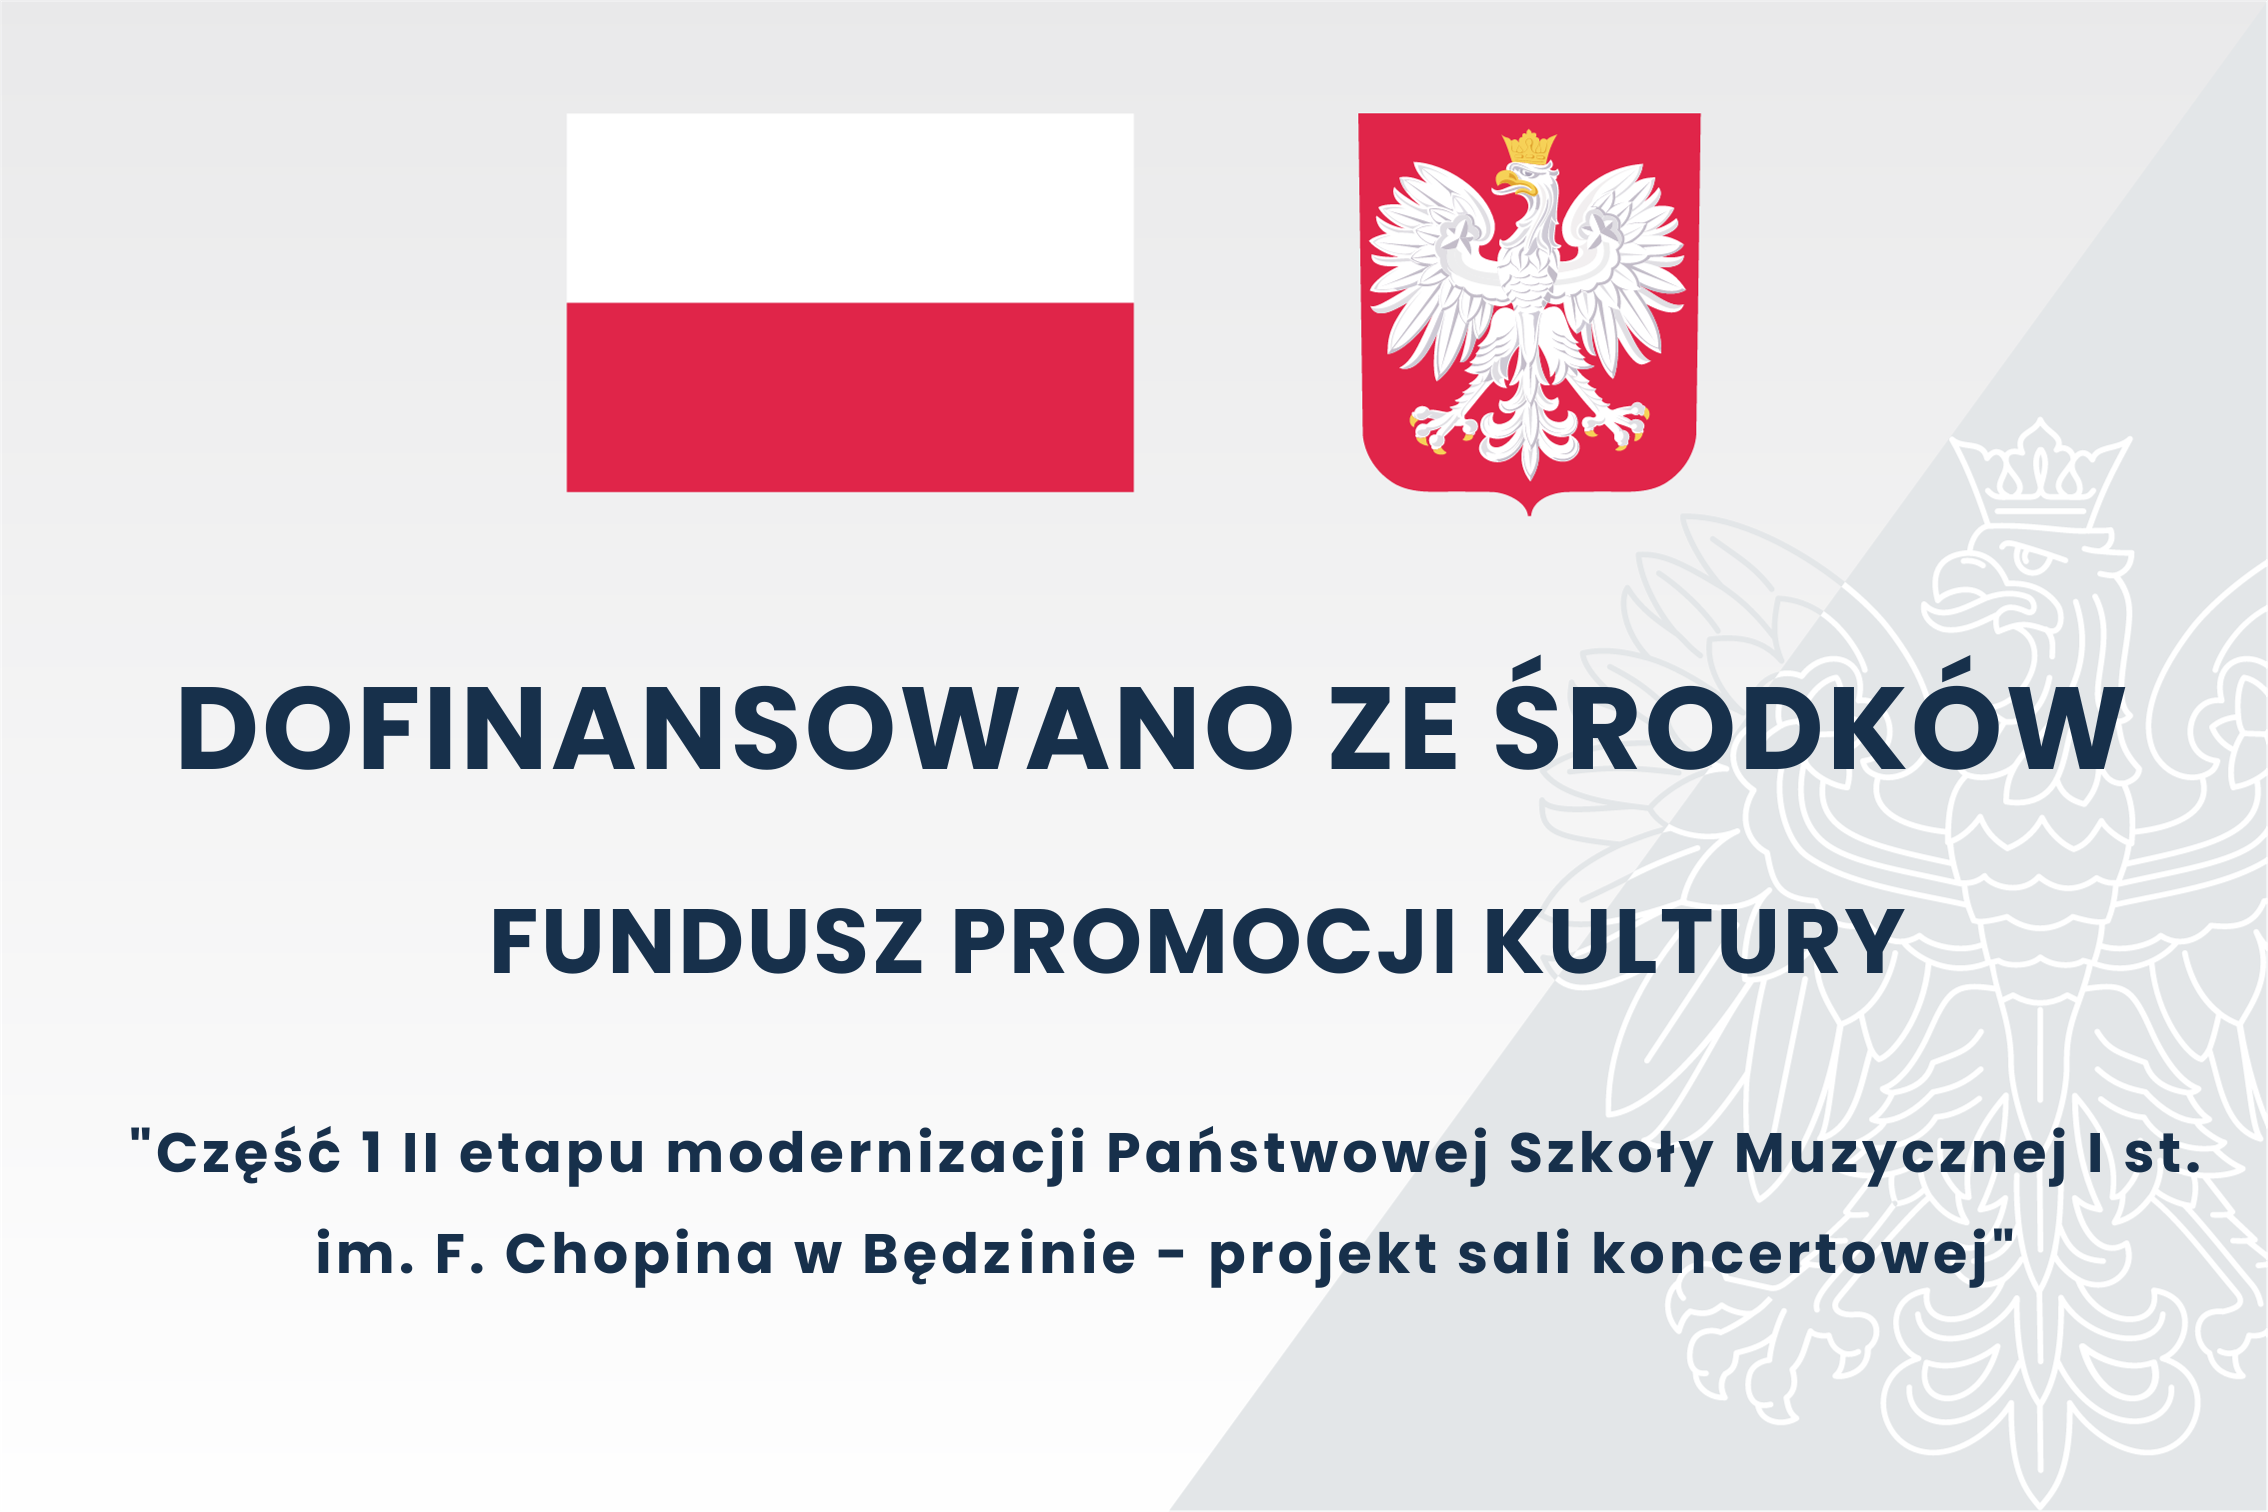 tablica na szarym tle, w prawej stronie kontur orła białego, na środku flaga Polski i godło, pod nimi opisy projektu